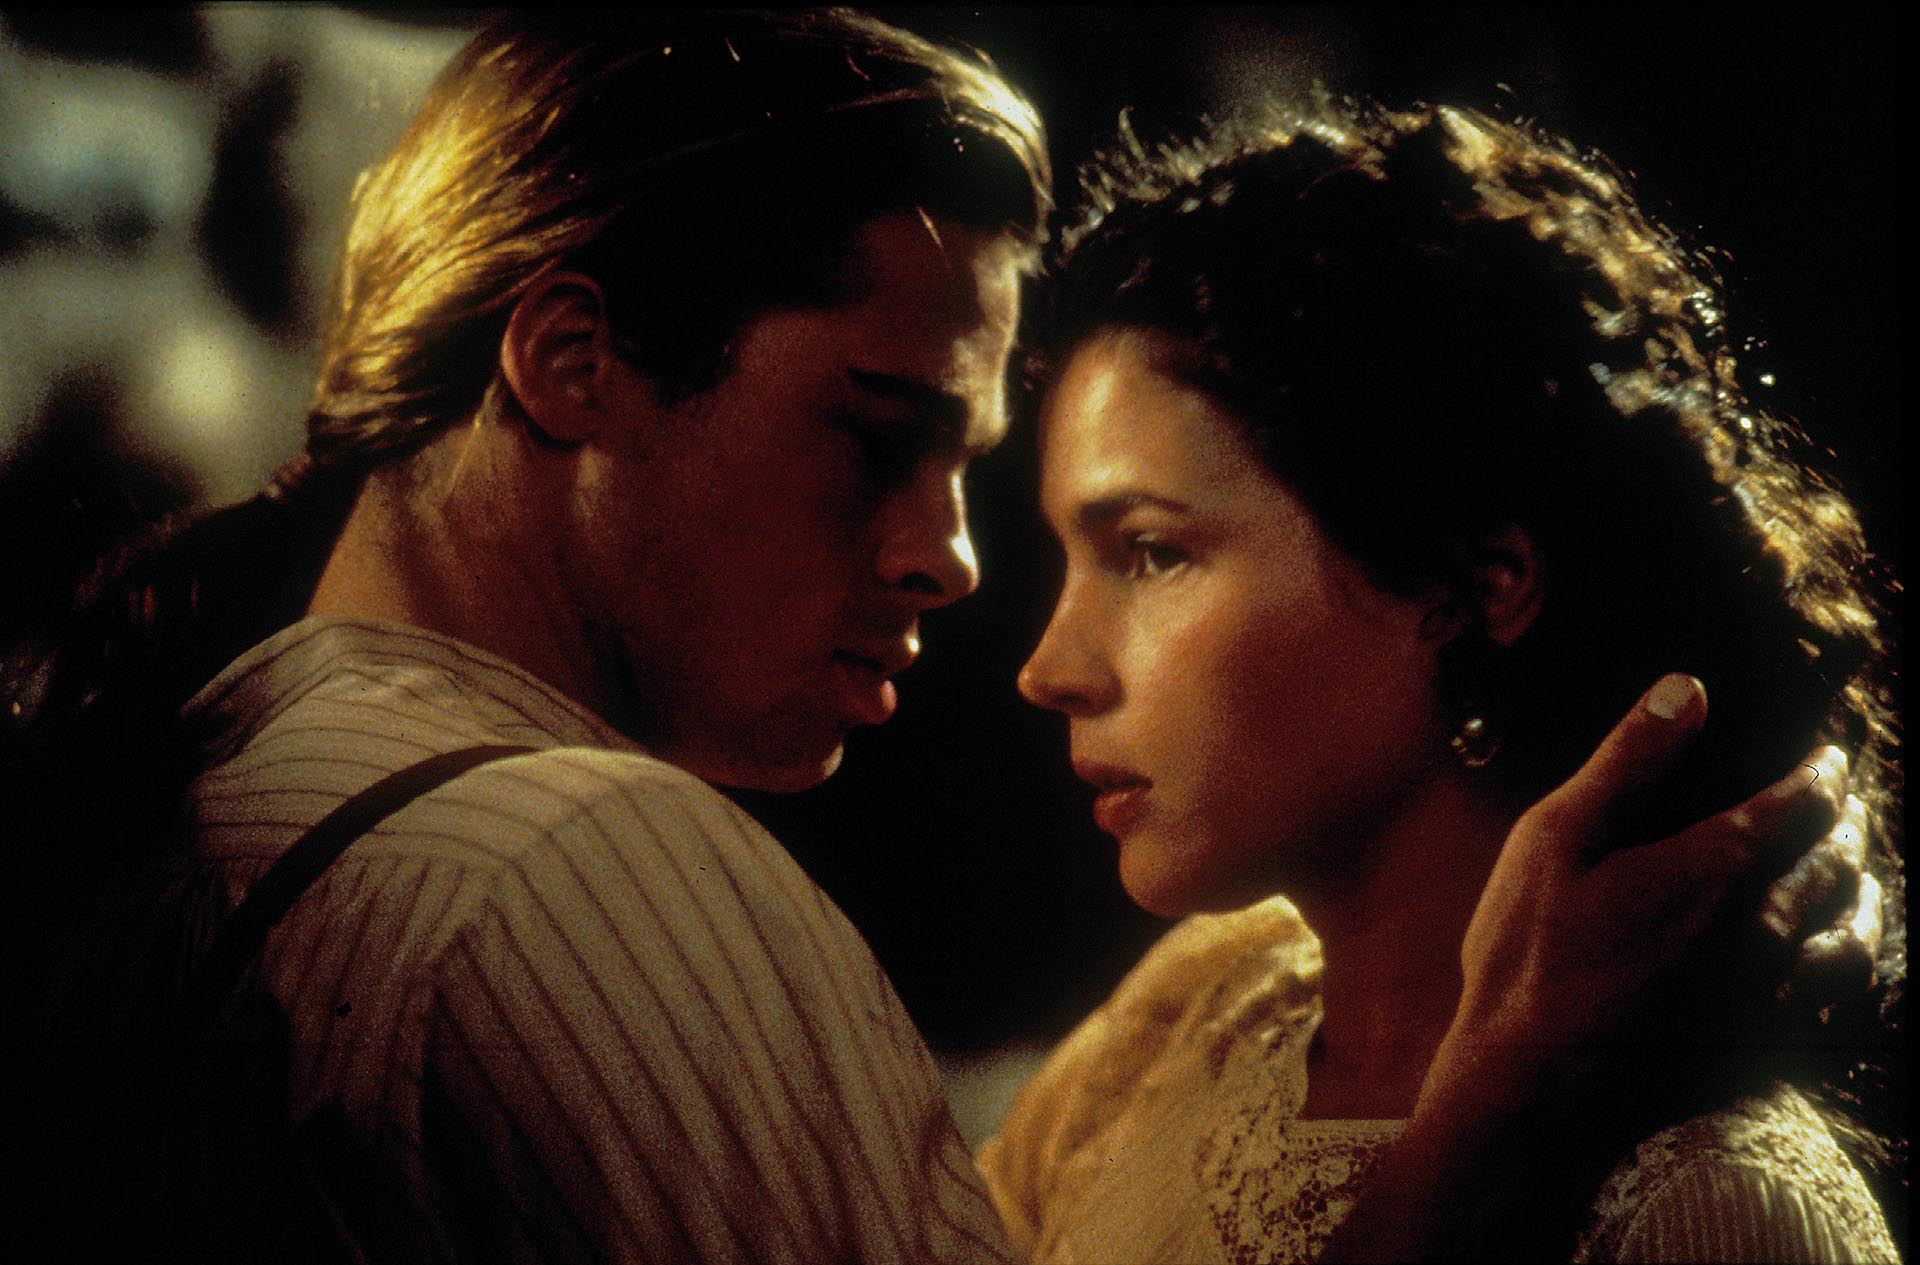 Brad Pitt y Julia Ormond nunca confirmaron ni desmintieron los rumores de romance entre ellos (Shutterstock)